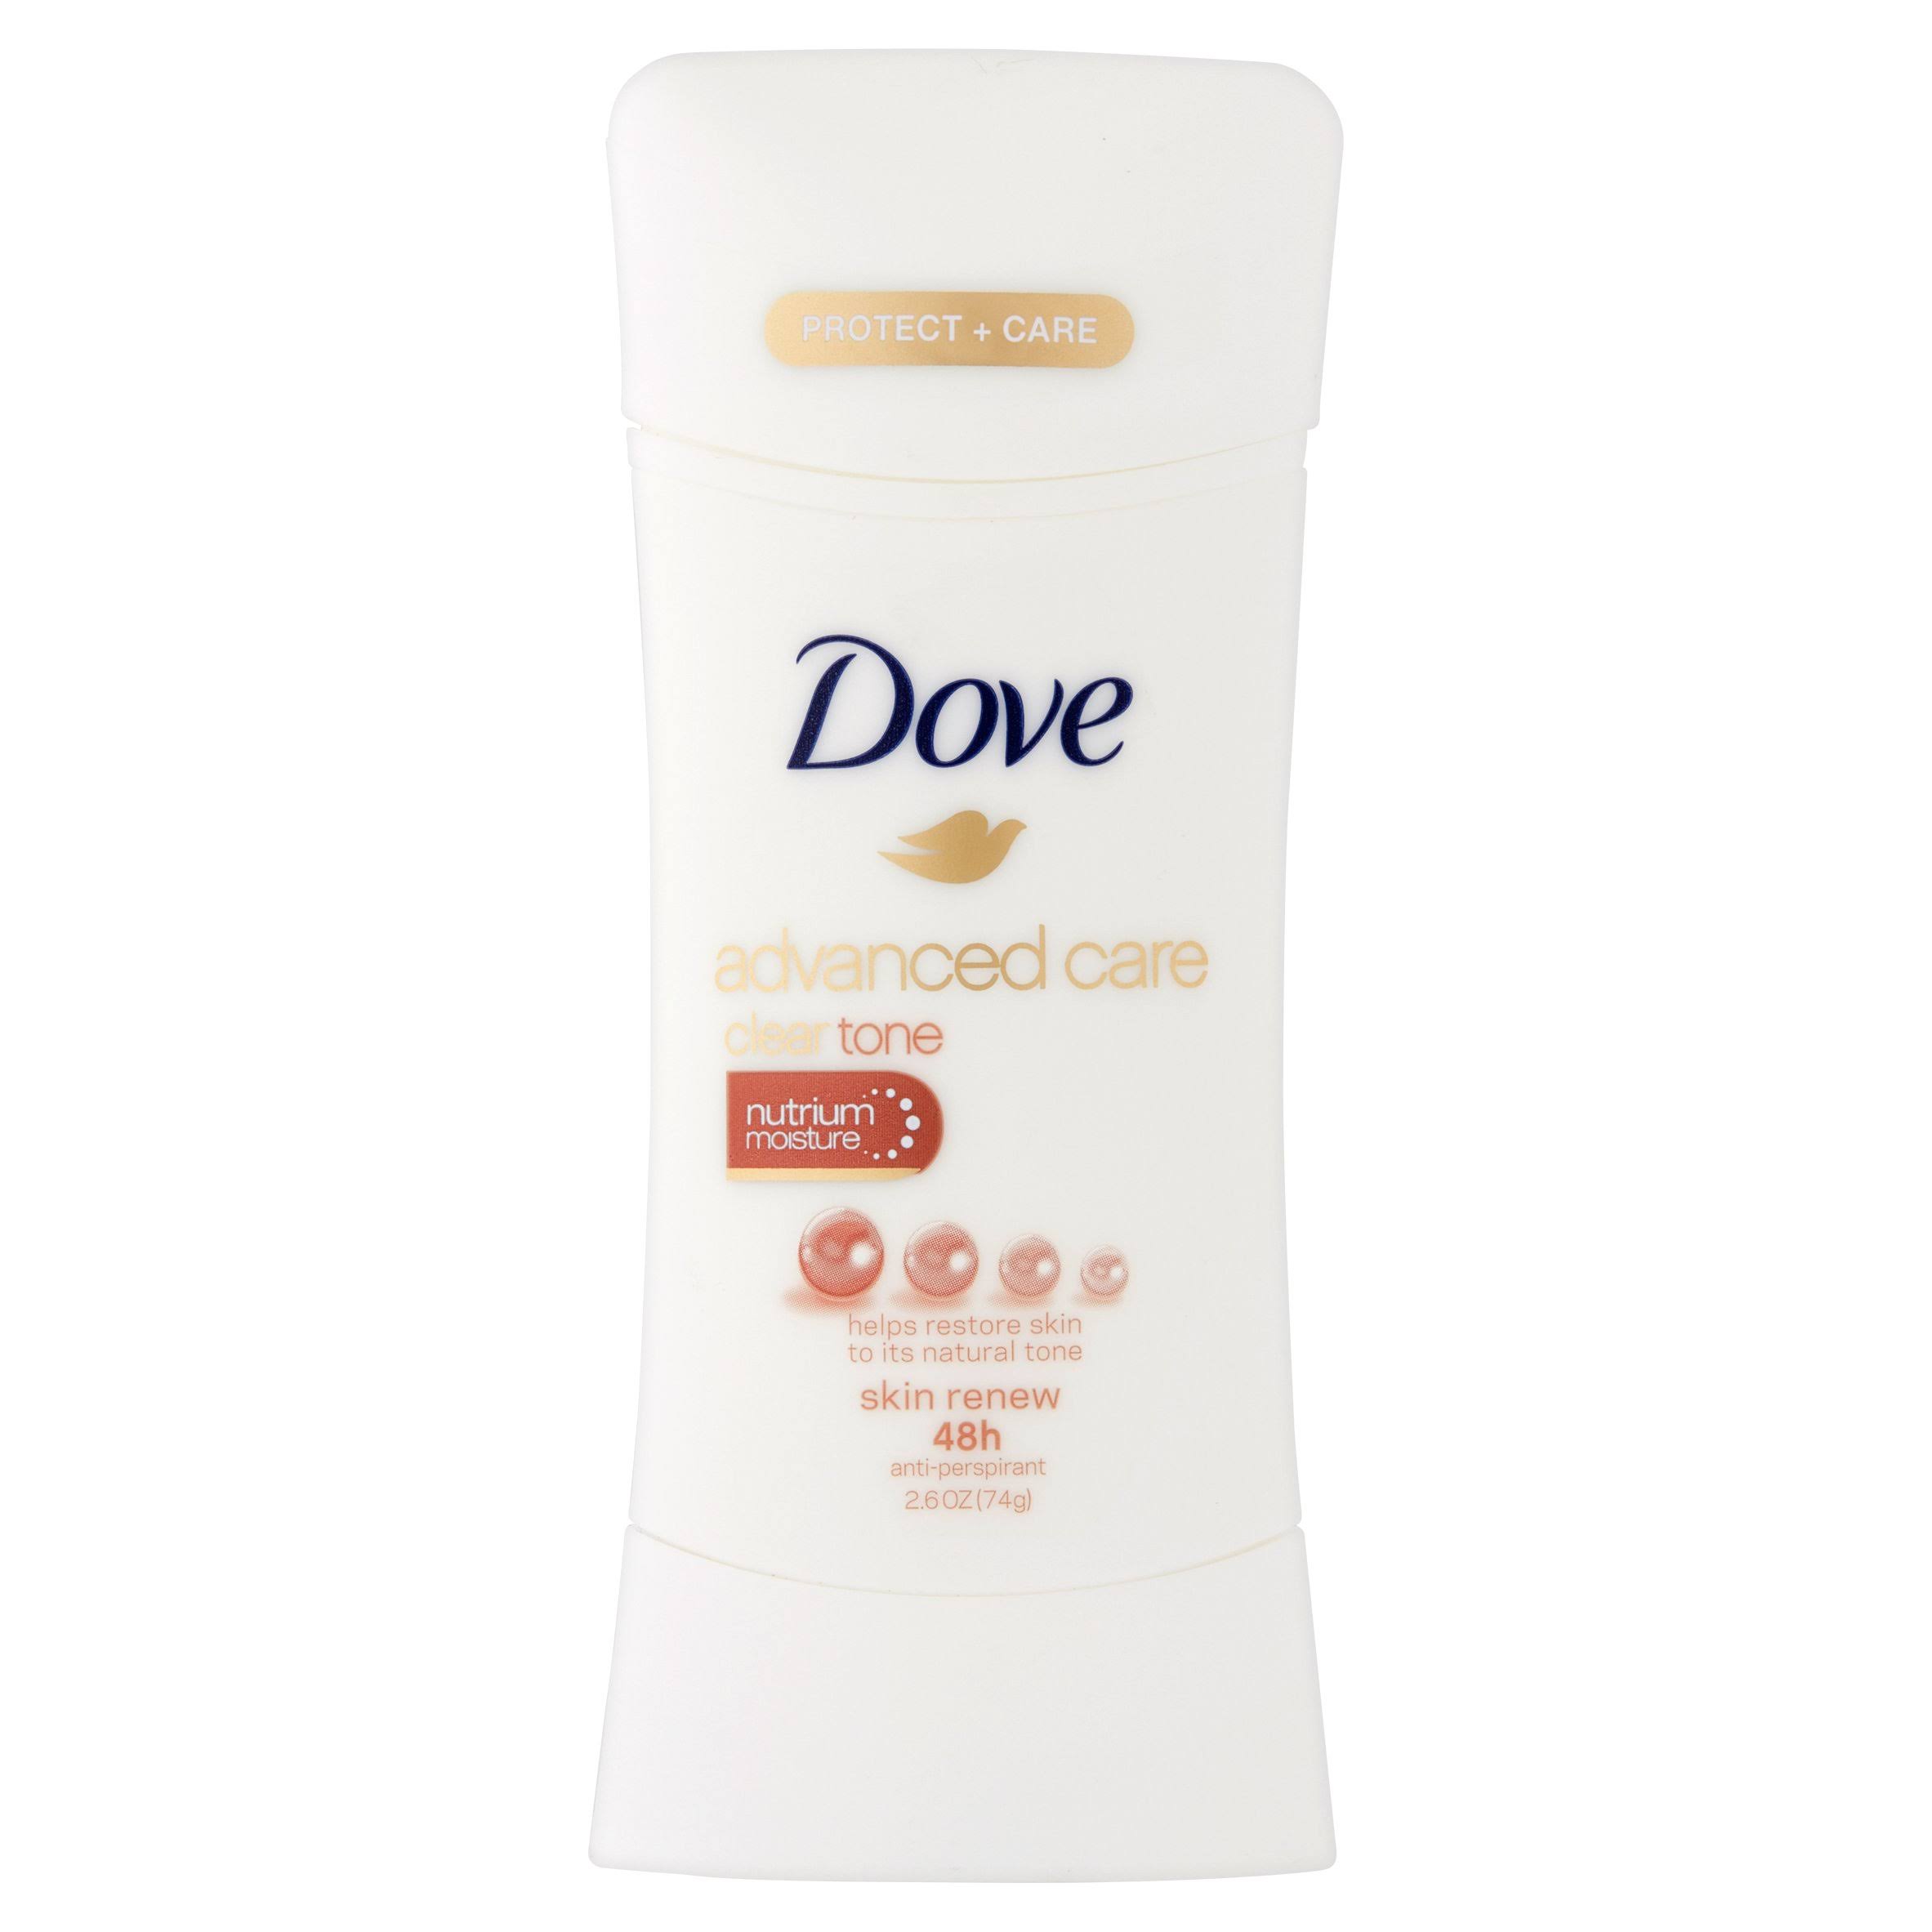 Dove Advanced Care Clear Tone Skin Renew 48h Anti-Perspirant - 2.6oz